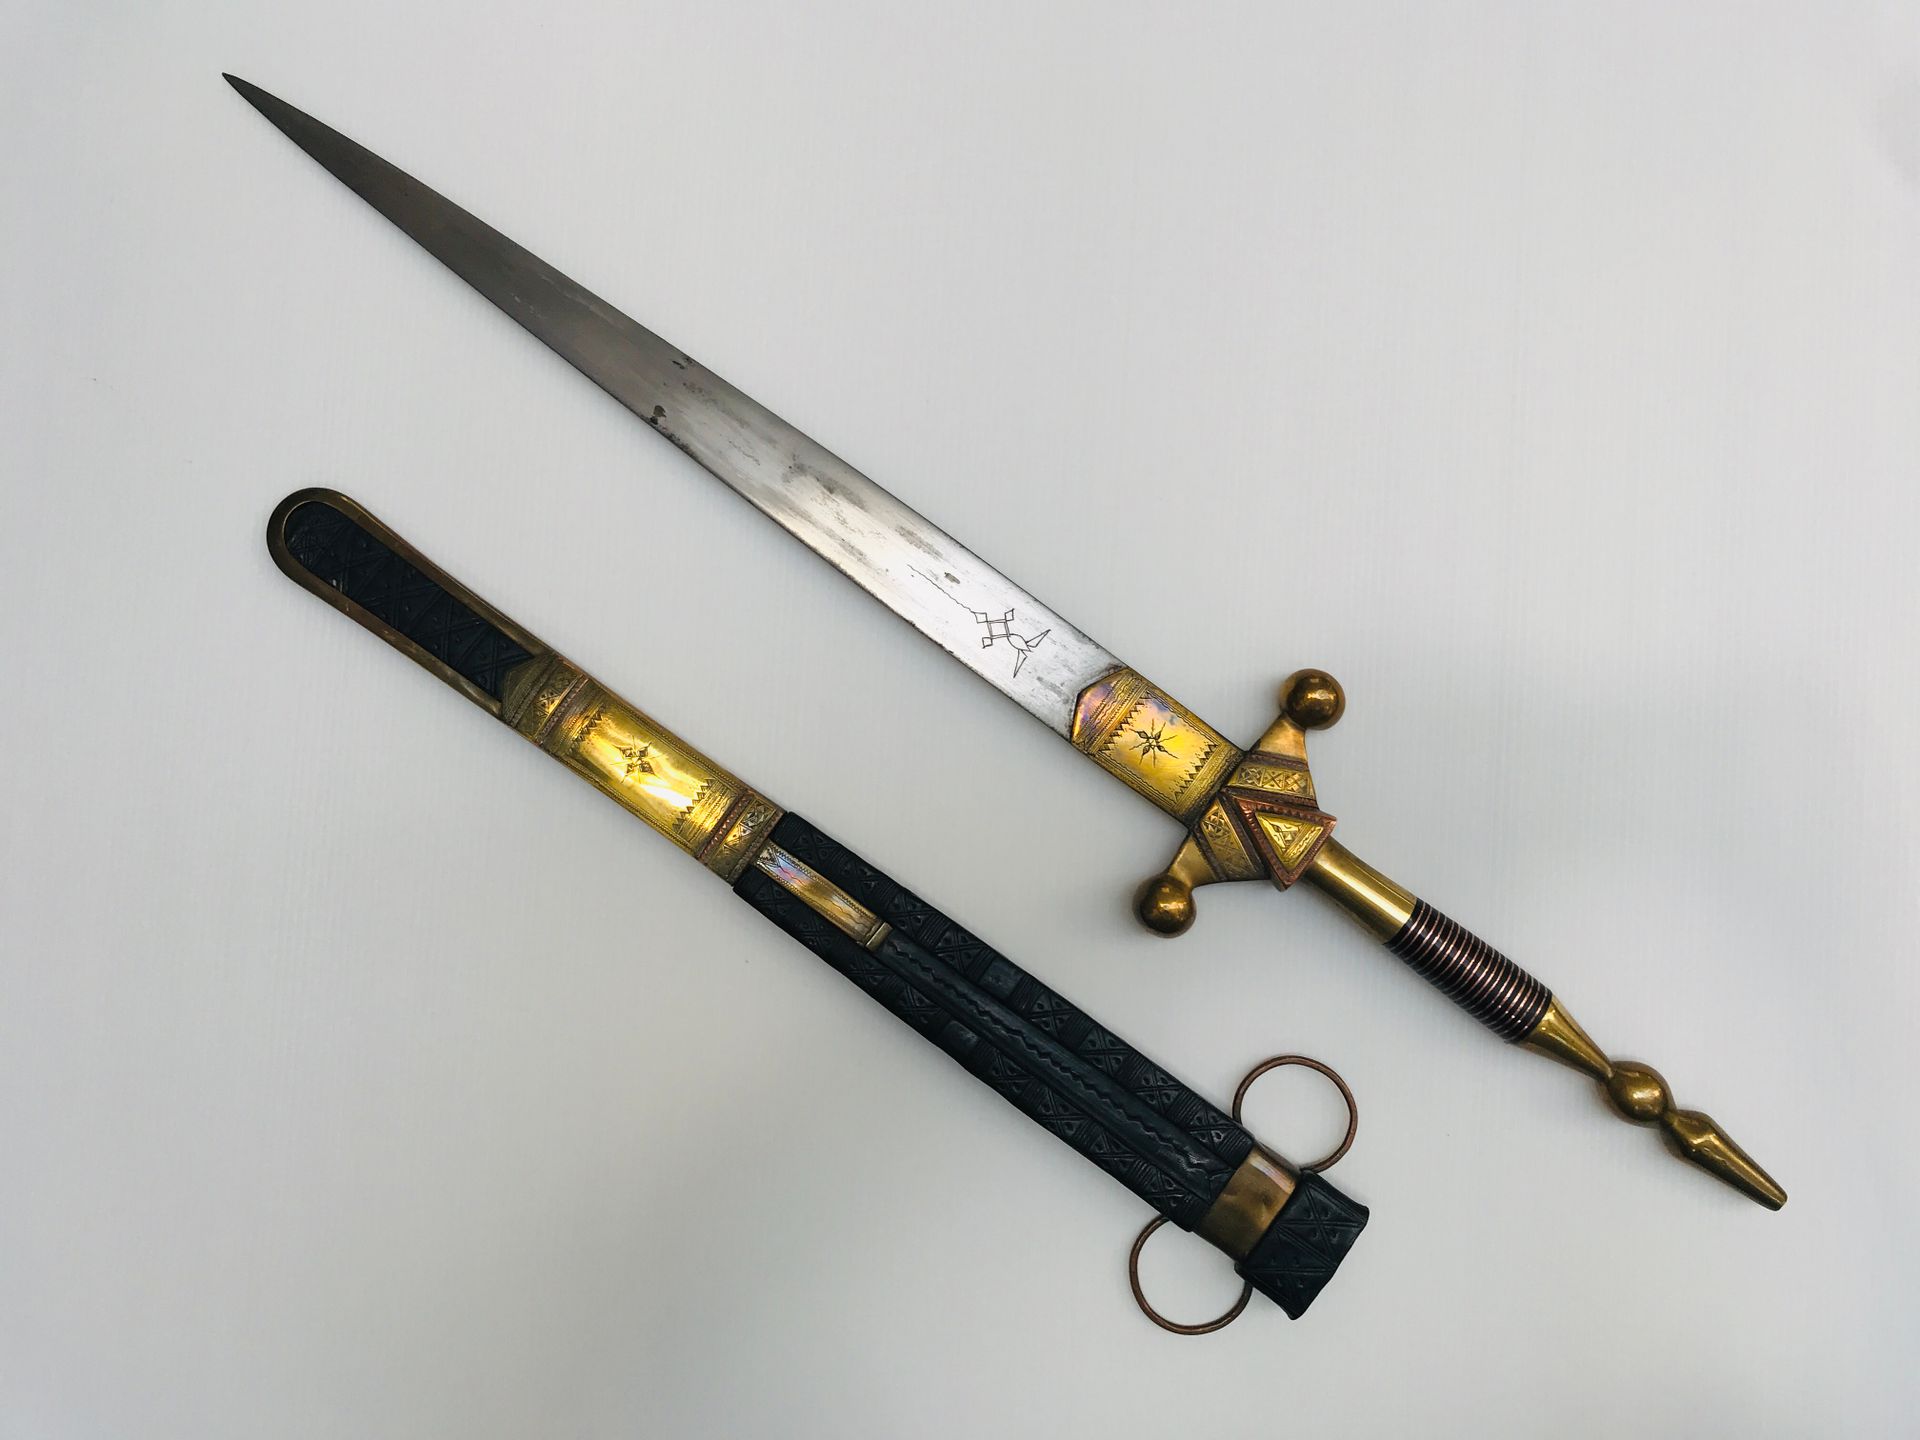 Épée touareg en laiton et cuivre gravie, fourreau en cuir

L. 77 cm